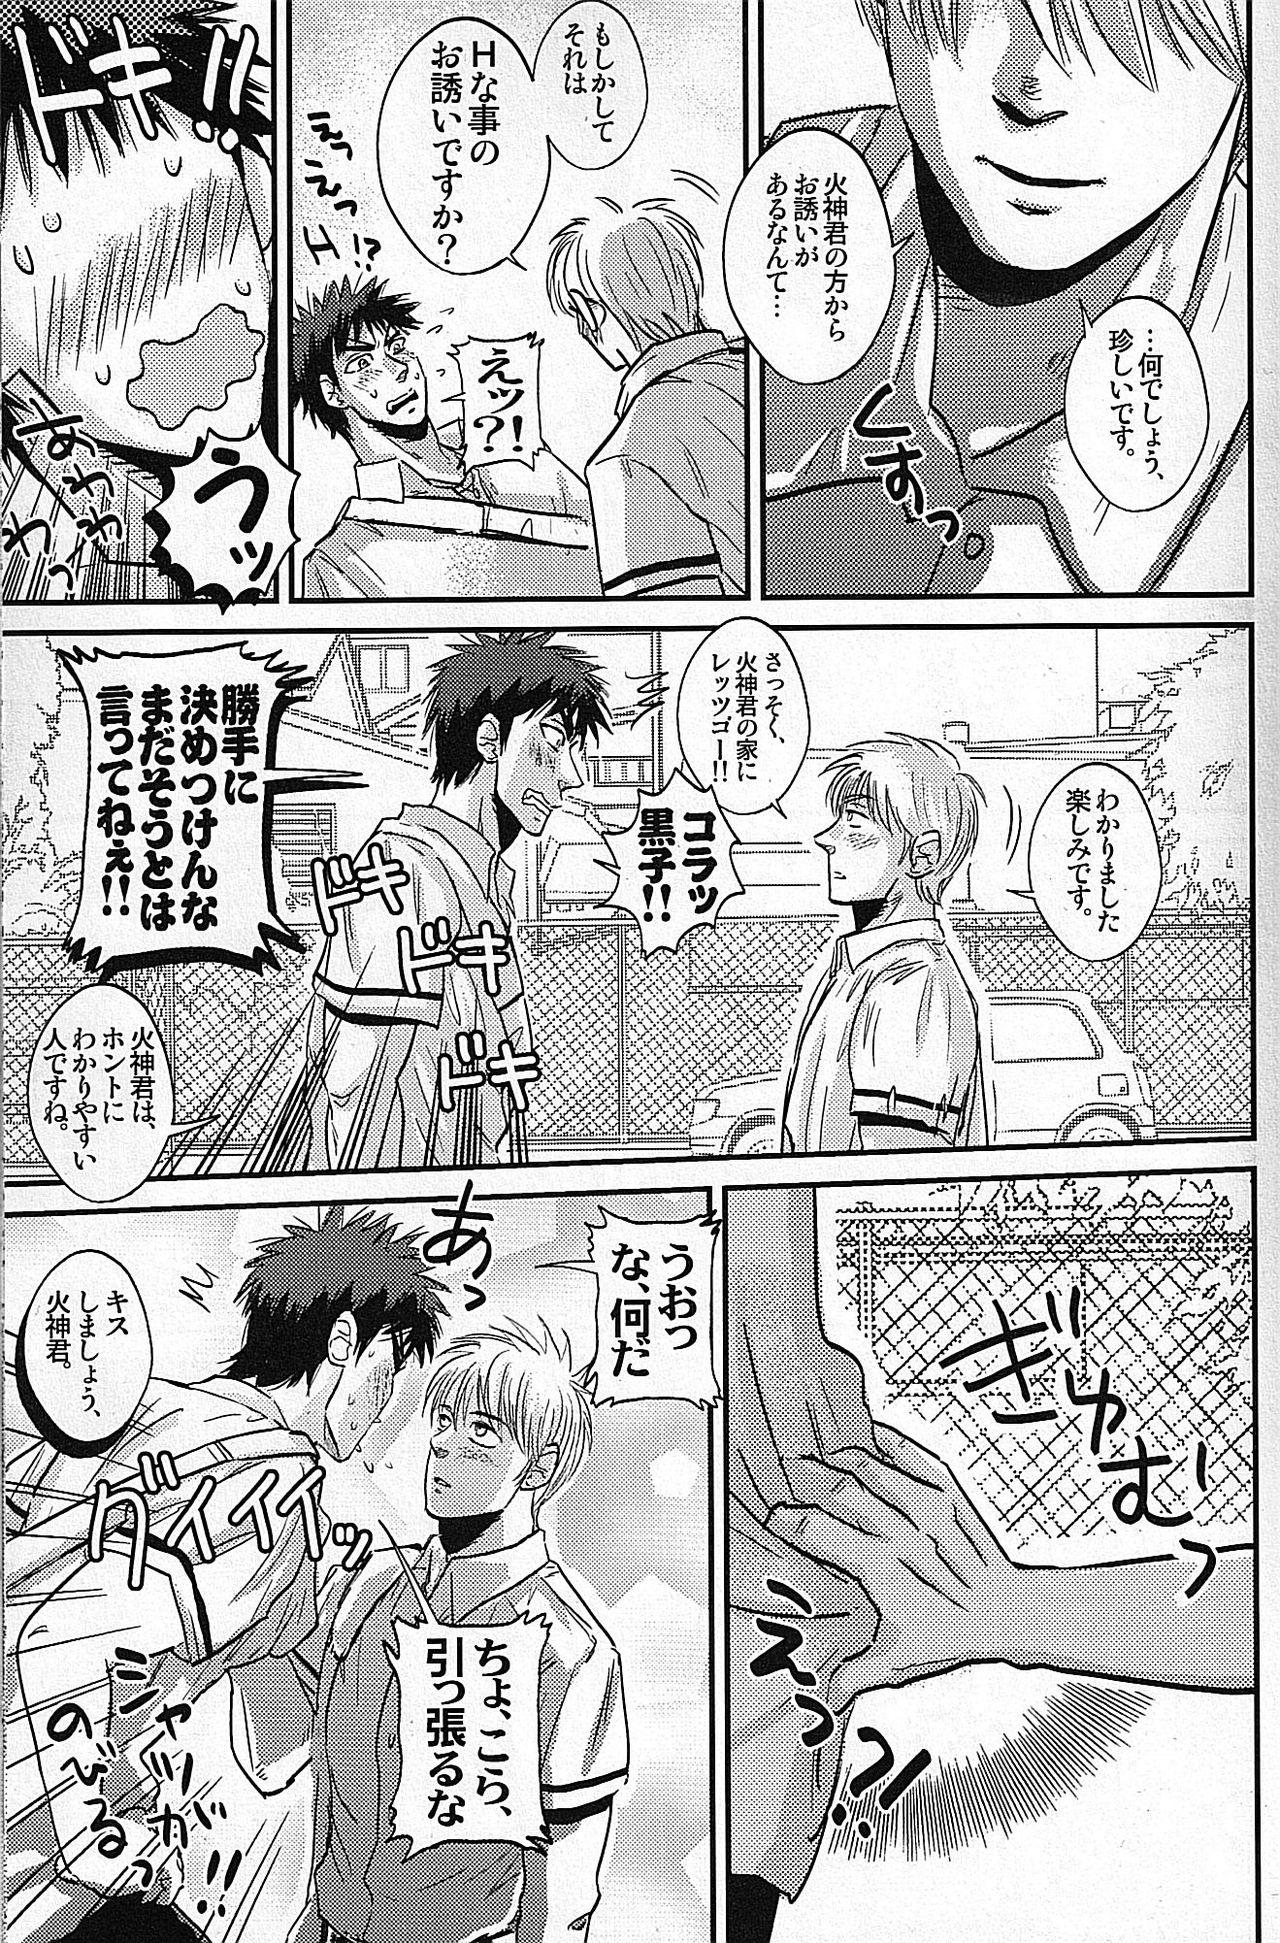 Masturbating Hi Shinkun no Tori Setsu. - Kuroko no basuke Wet - Page 4